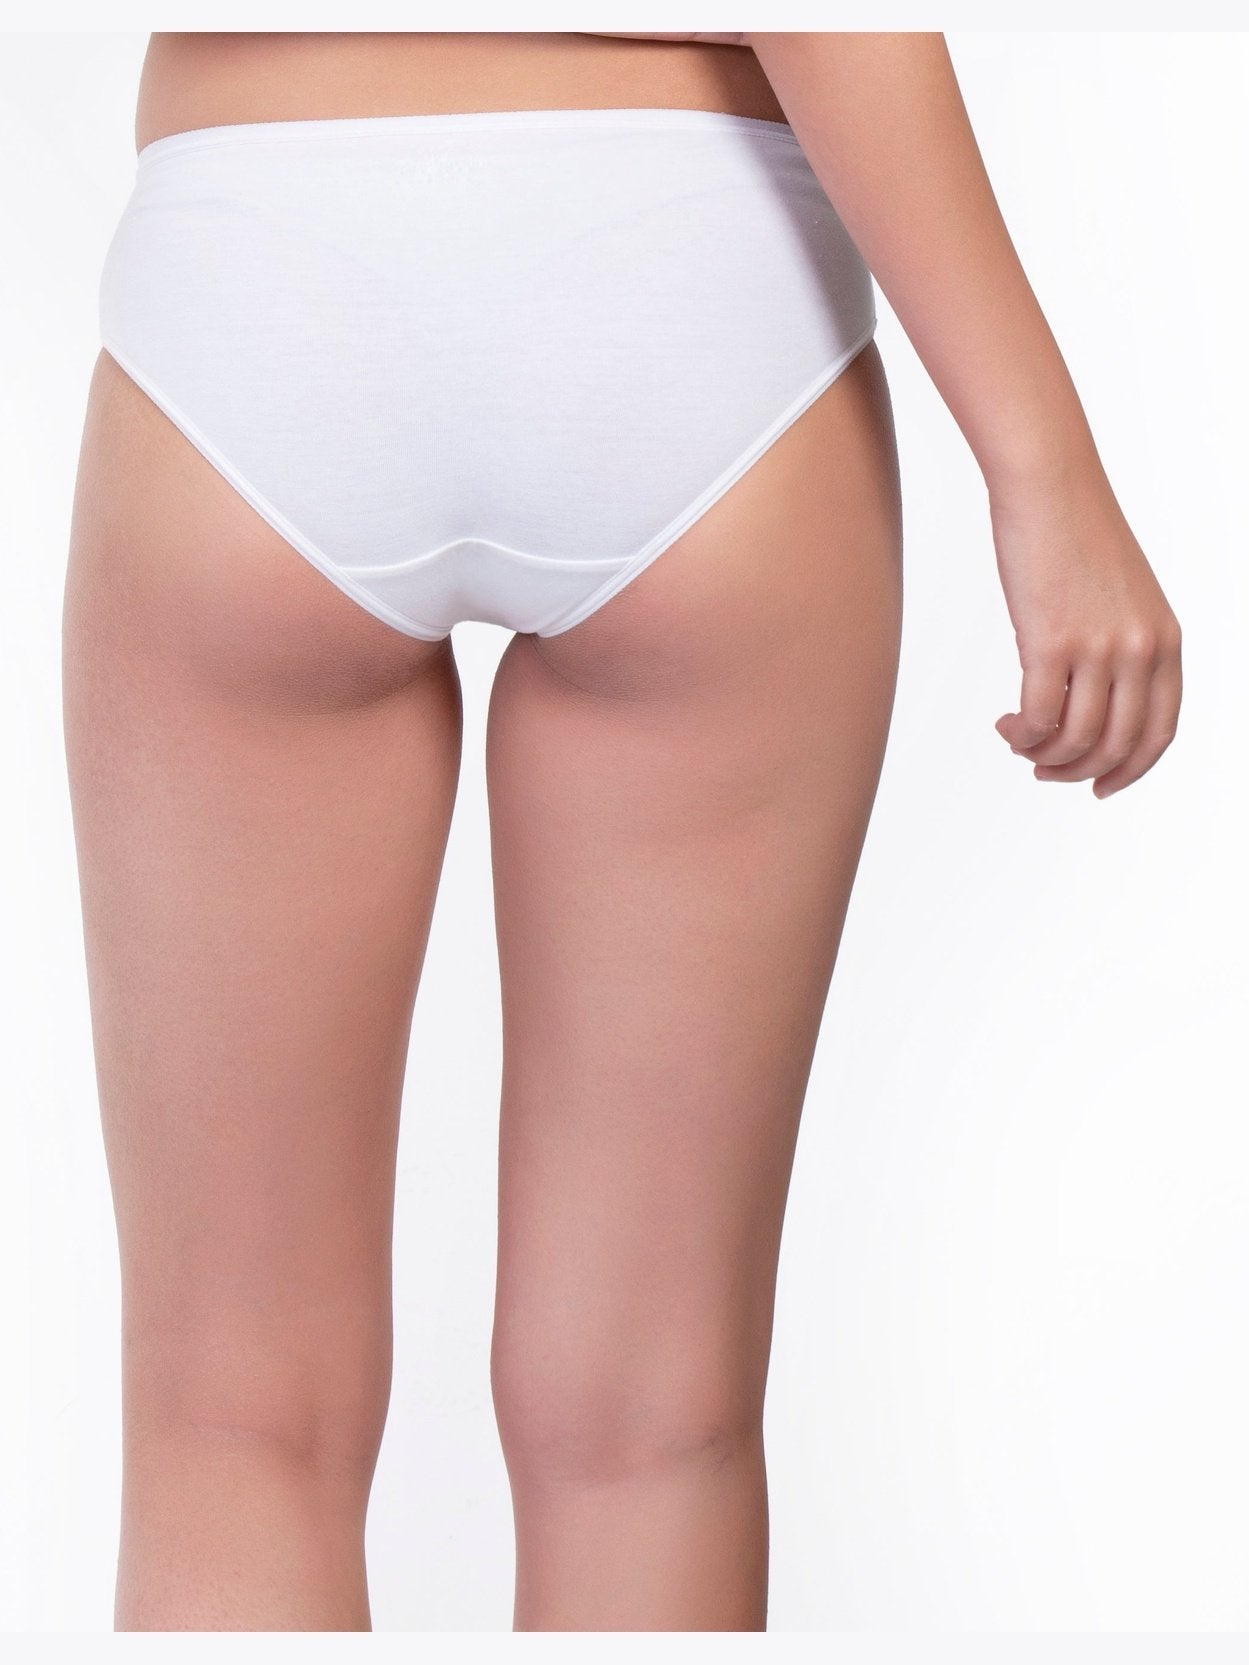 Envie Women's Cotton Brief Low rise Girls Underwear panty